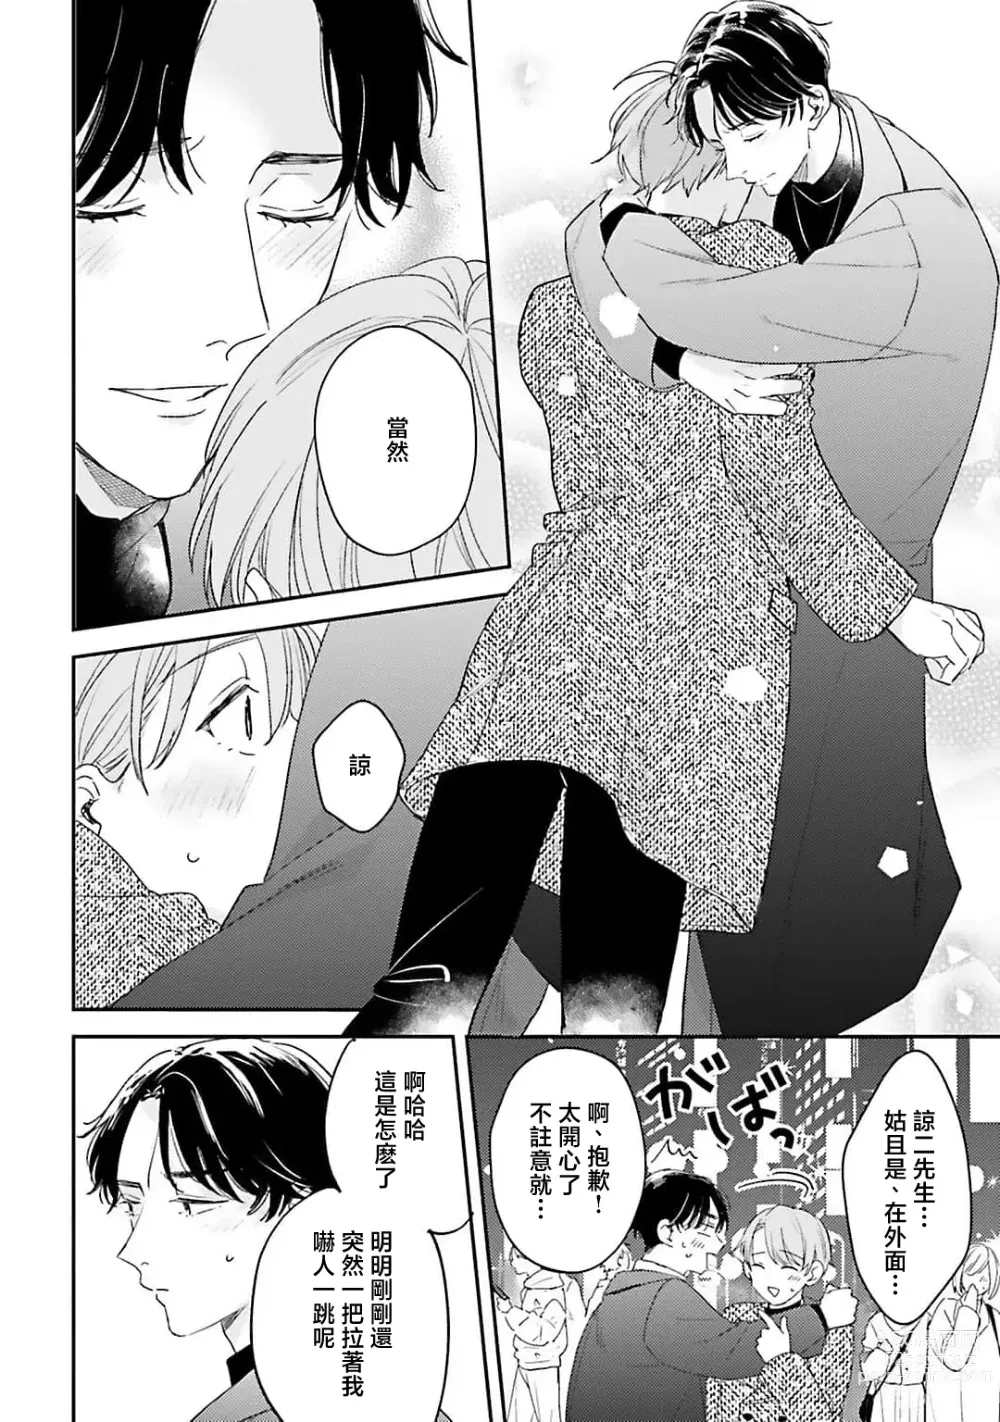 Page 146 of manga 绽放的恋爱皆为醉与甜1-5